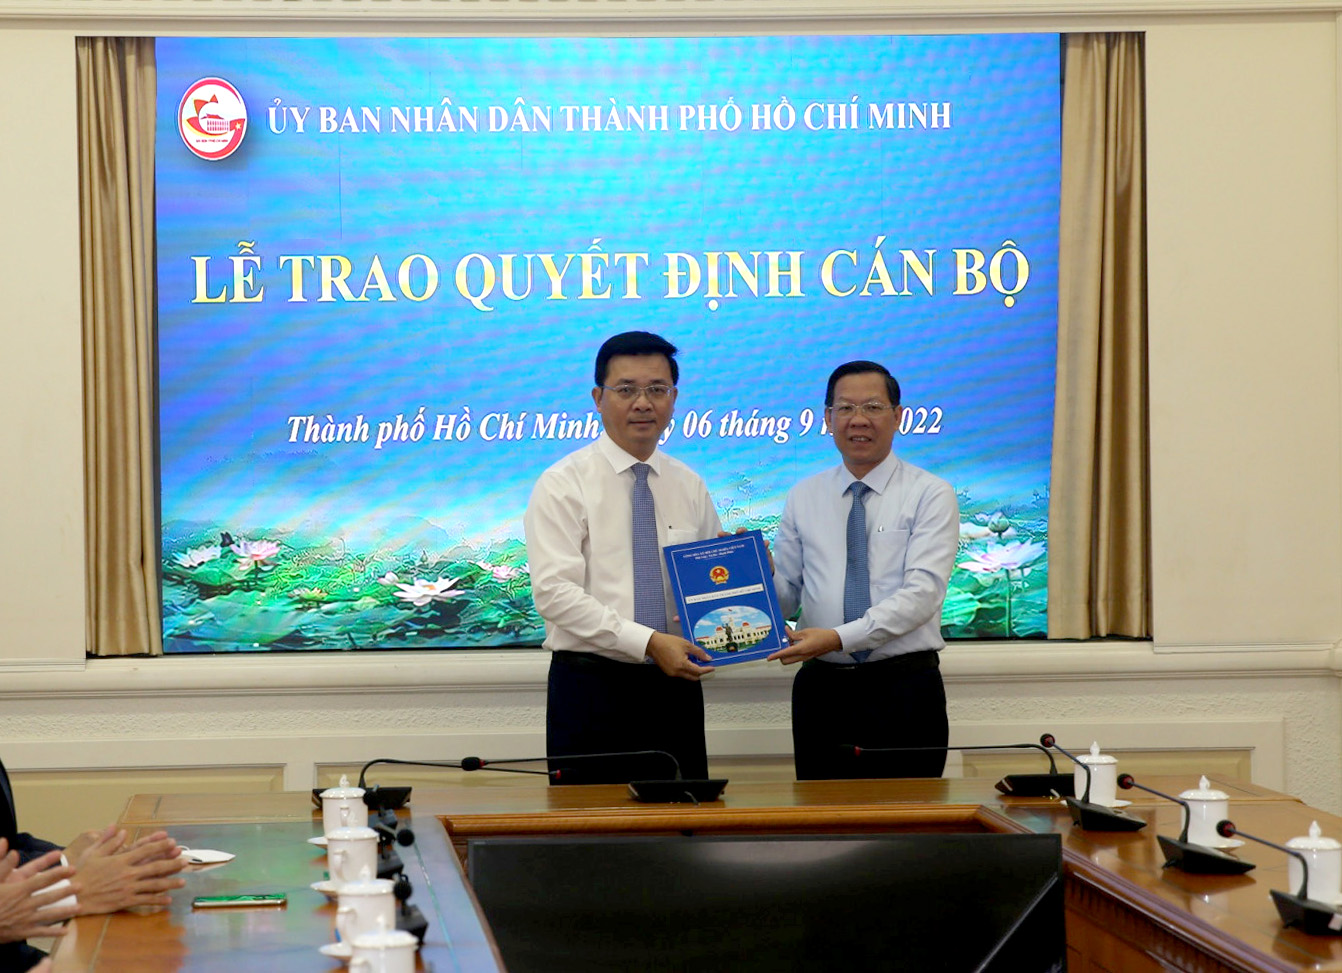 Chủ tịch UBND TP. Hồ Chí Minh Phan Văn Mãi trao Quyết định cho đồng chí Võ Đức Thanh.